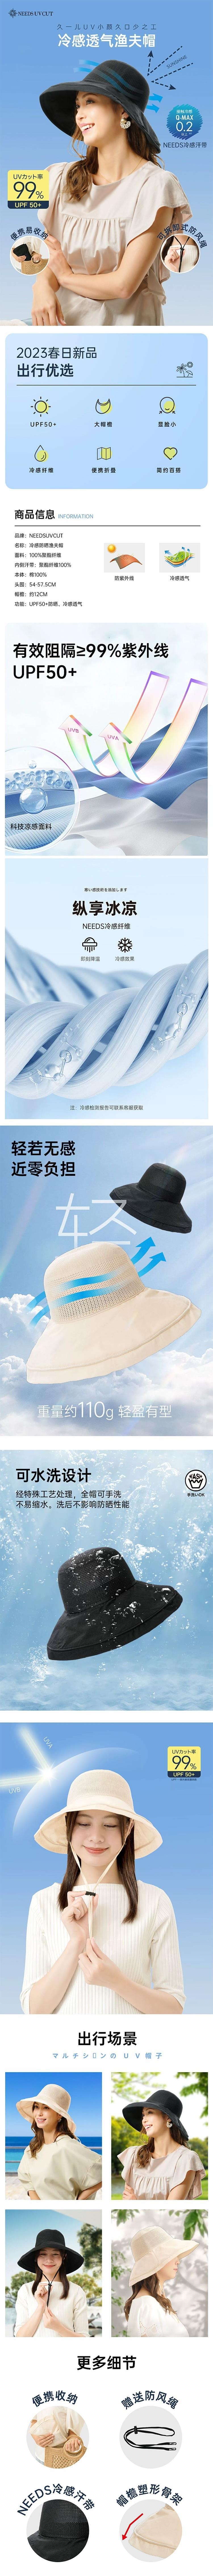 【日本直邮】UV CUT 防晒遮阳透气可折叠防晒帽渔夫帽 米色